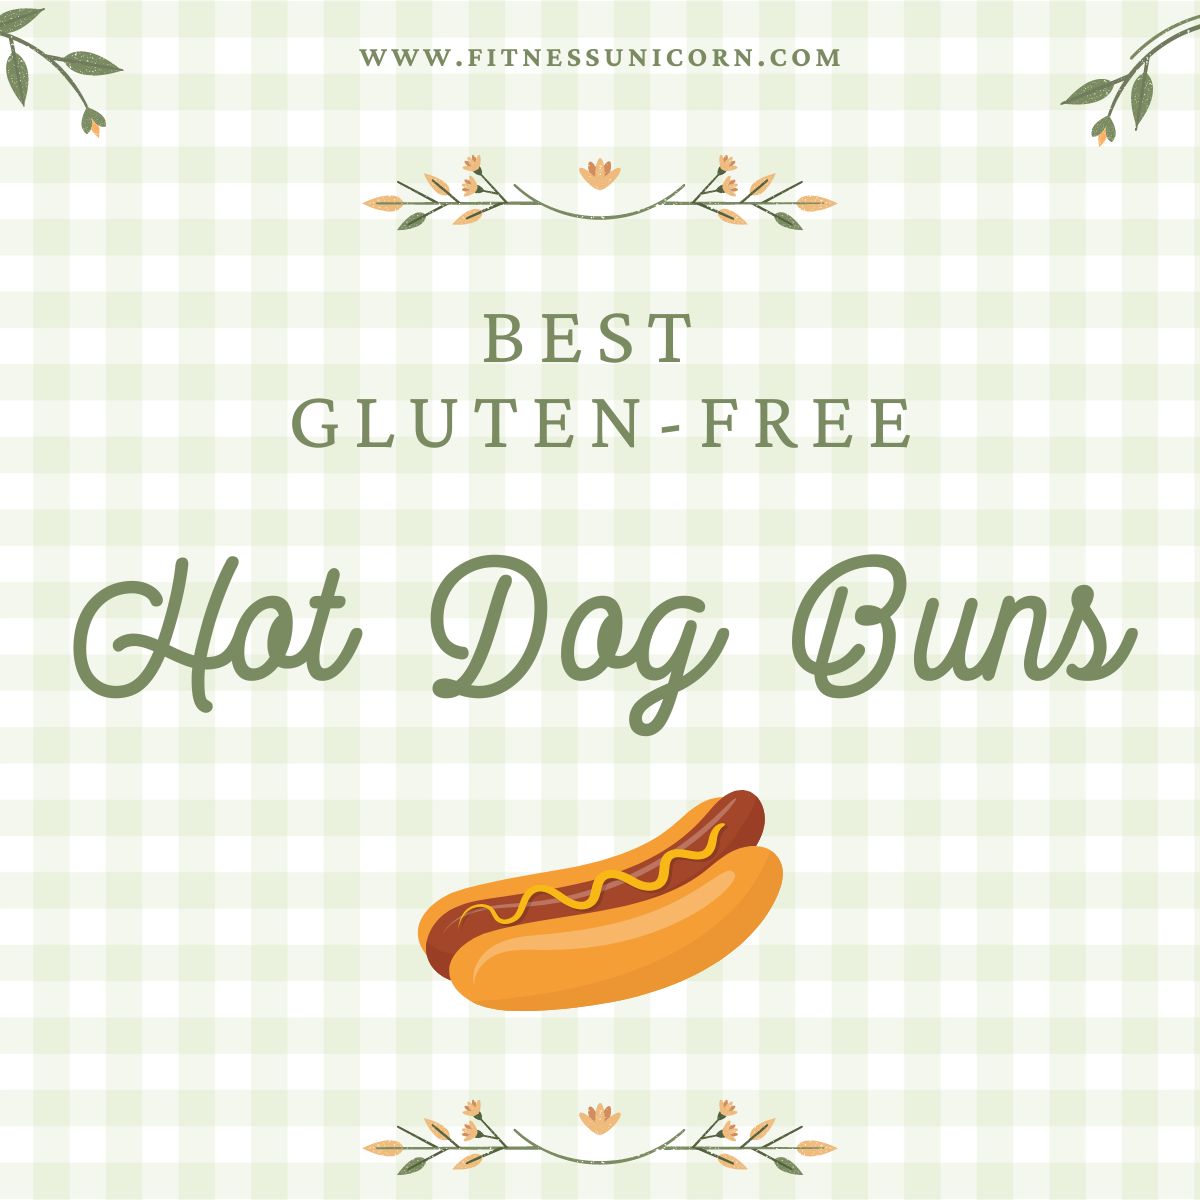 Best gluten free hot dog buns